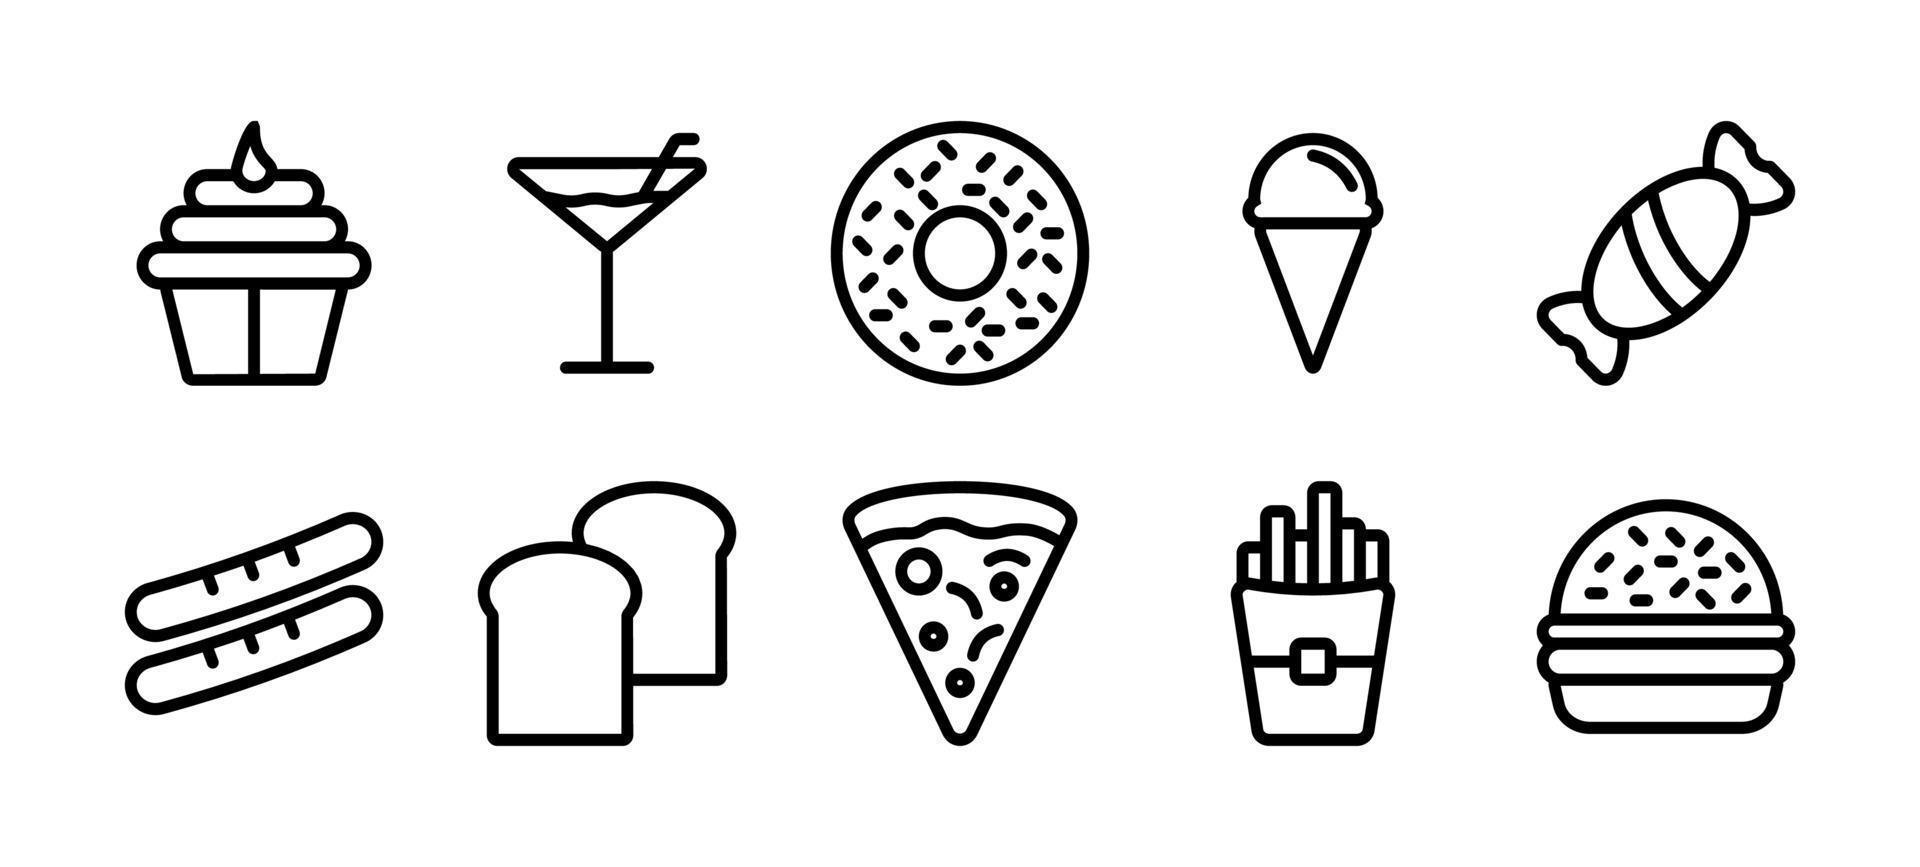 ensemble d'icônes alimentaires. collection d'icônes alimentaires en ligne mince, ensemble d'icônes alimentaires en couleur noire pour la conception de sites Web, éléments de conception pour vos projets. illustration vectorielle, icône des aliments en simple moderne vecteur